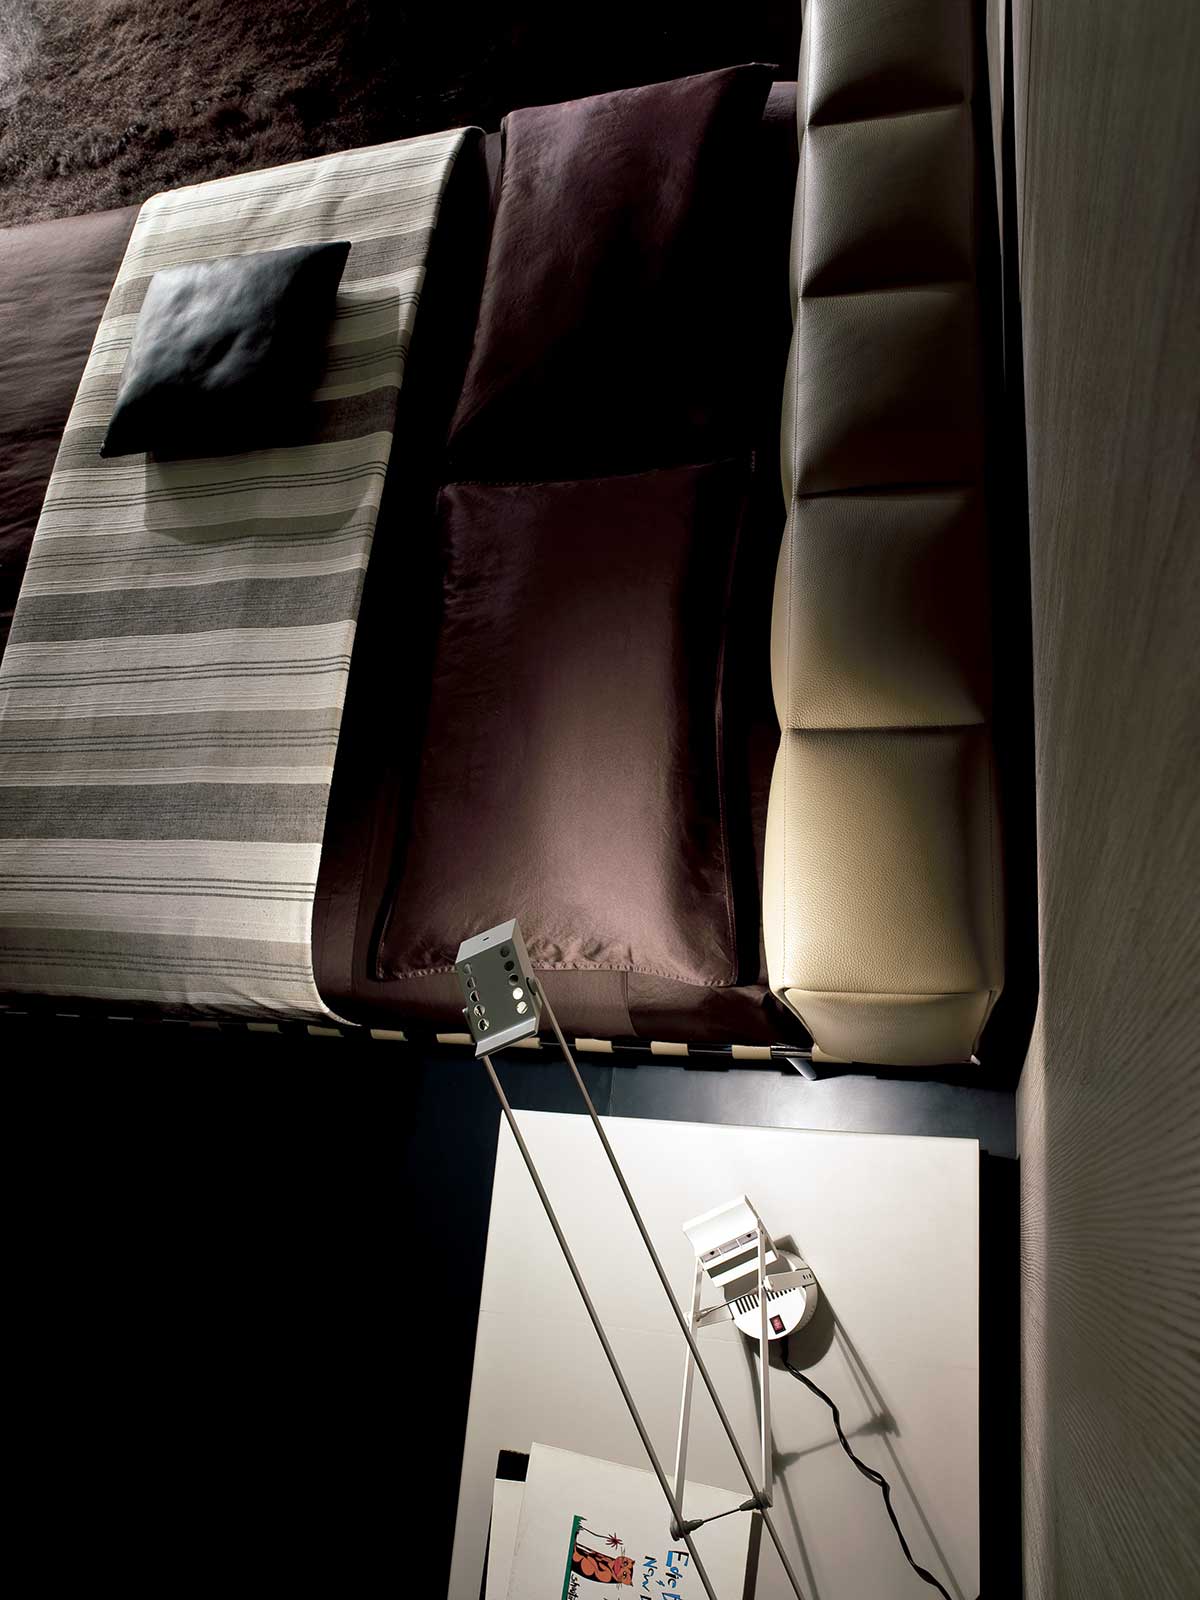 Lit en cuir design haut de gamme réalisé artisanalement en Italie. Vente en ligne de meubles design de luxe originaux et de haute qualité. Livraison gratuite.